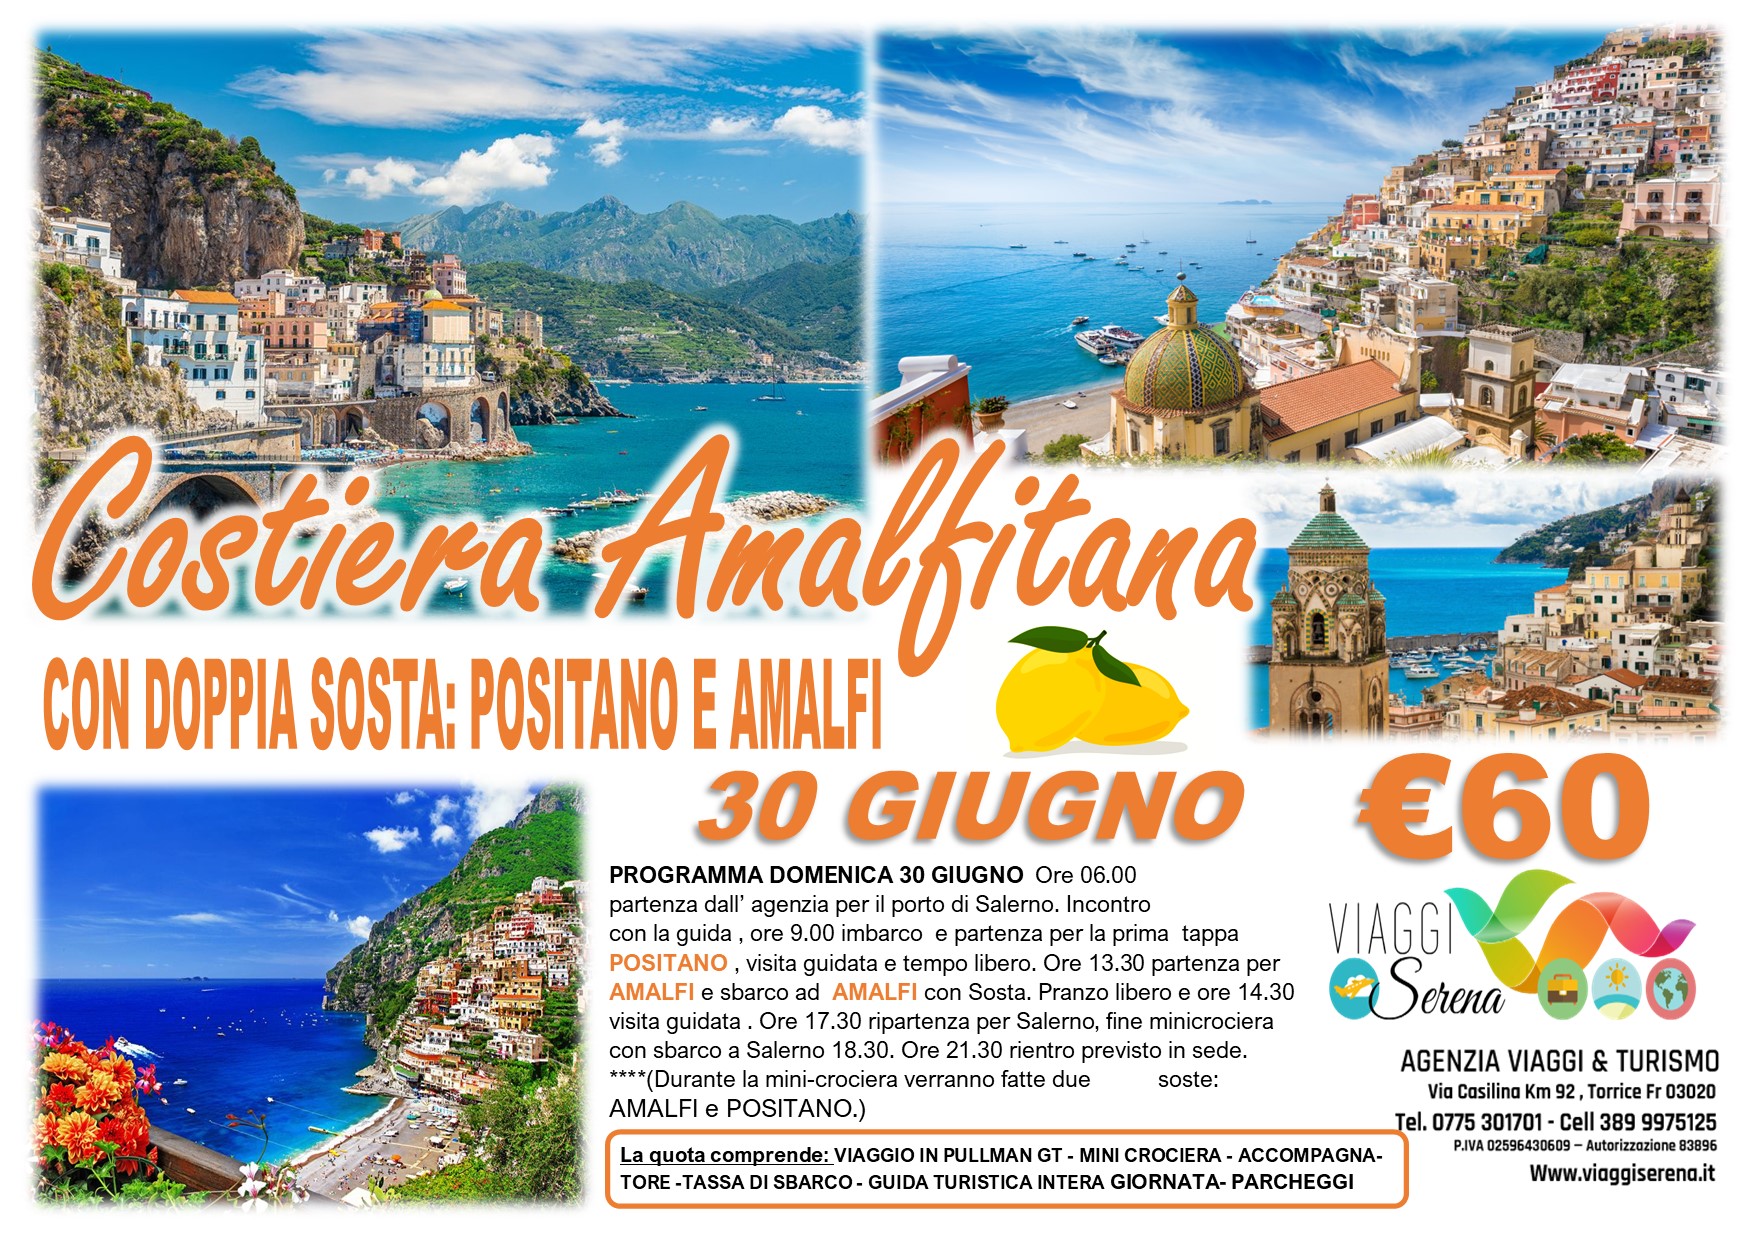 Viaggi di gruppo: Mini Crociera Costiera Amalfitana “Amalfi & Positano” 30 Giugno € 60,00